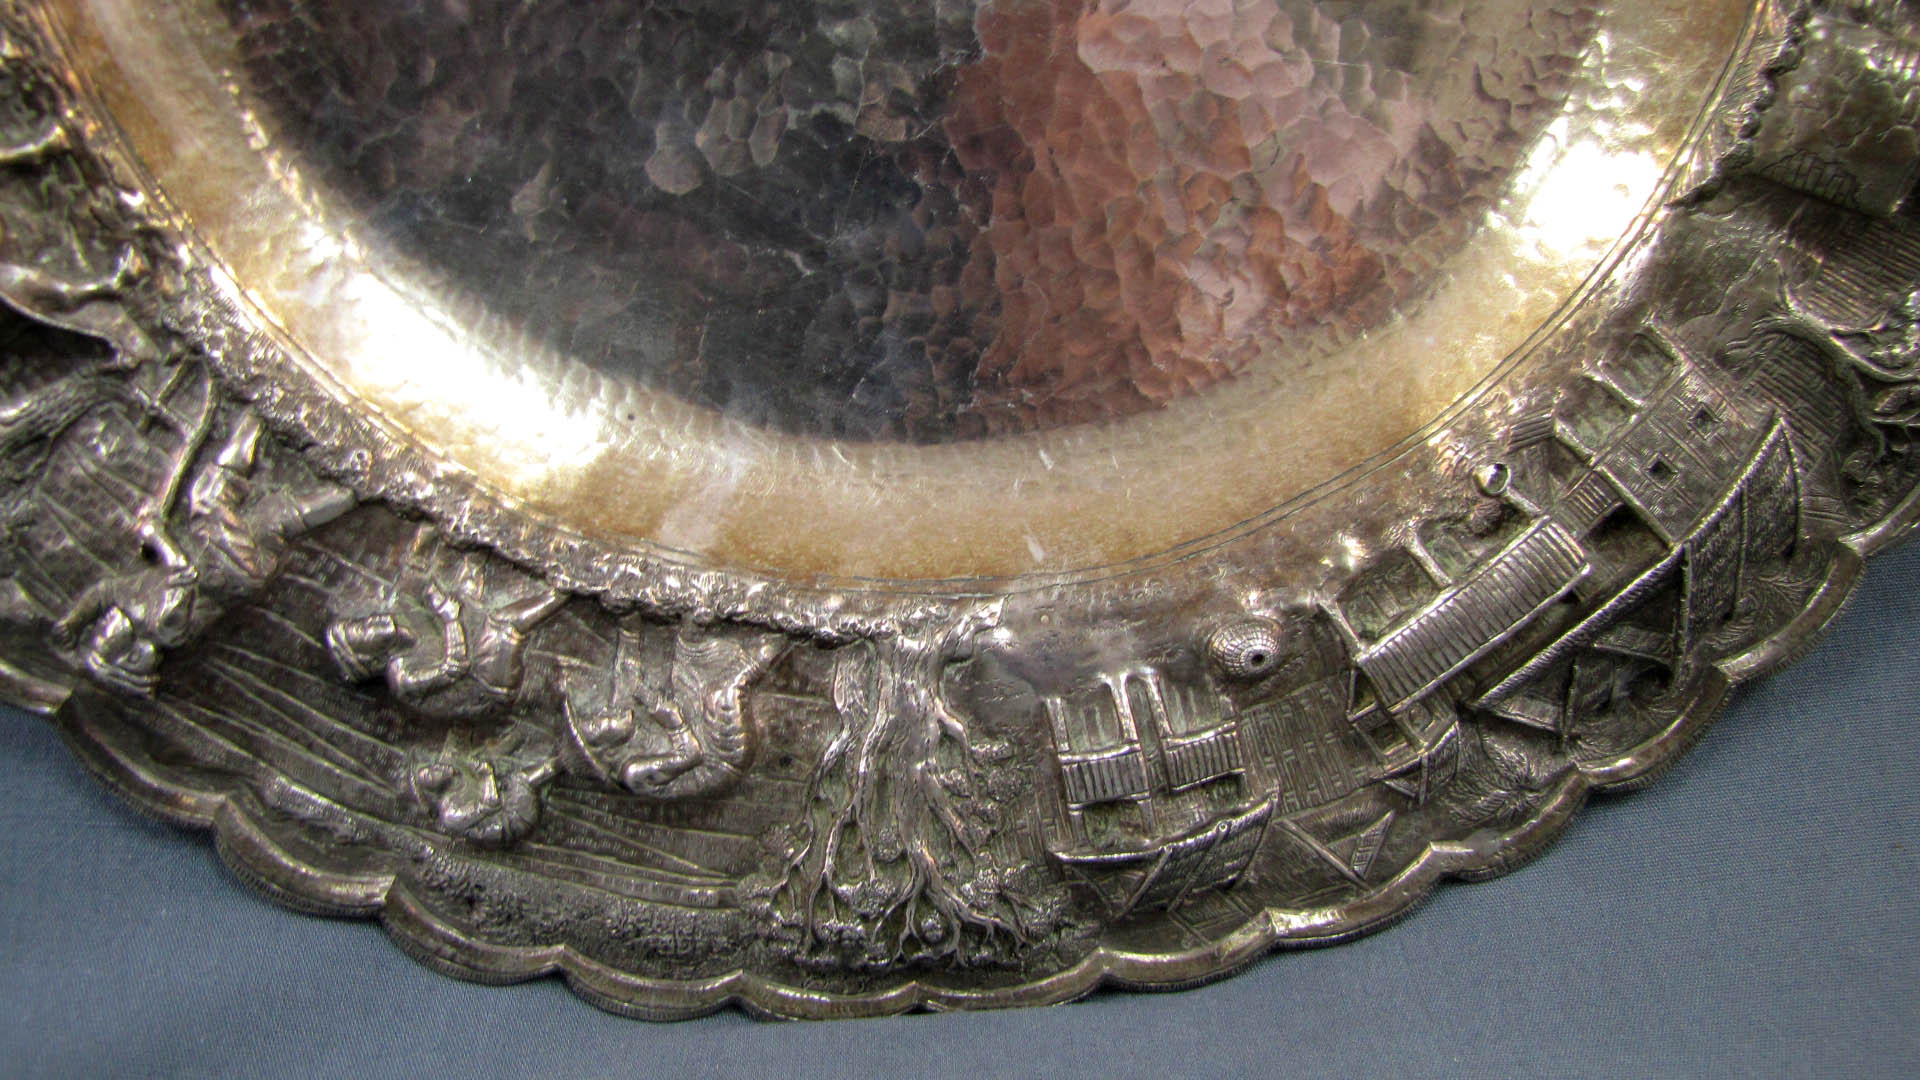 Silber, eine große Platte und eine Deckeldose, wohl Indien. Punzen. Geprüft.Schale: 1173 Gramm. - Image 16 of 19